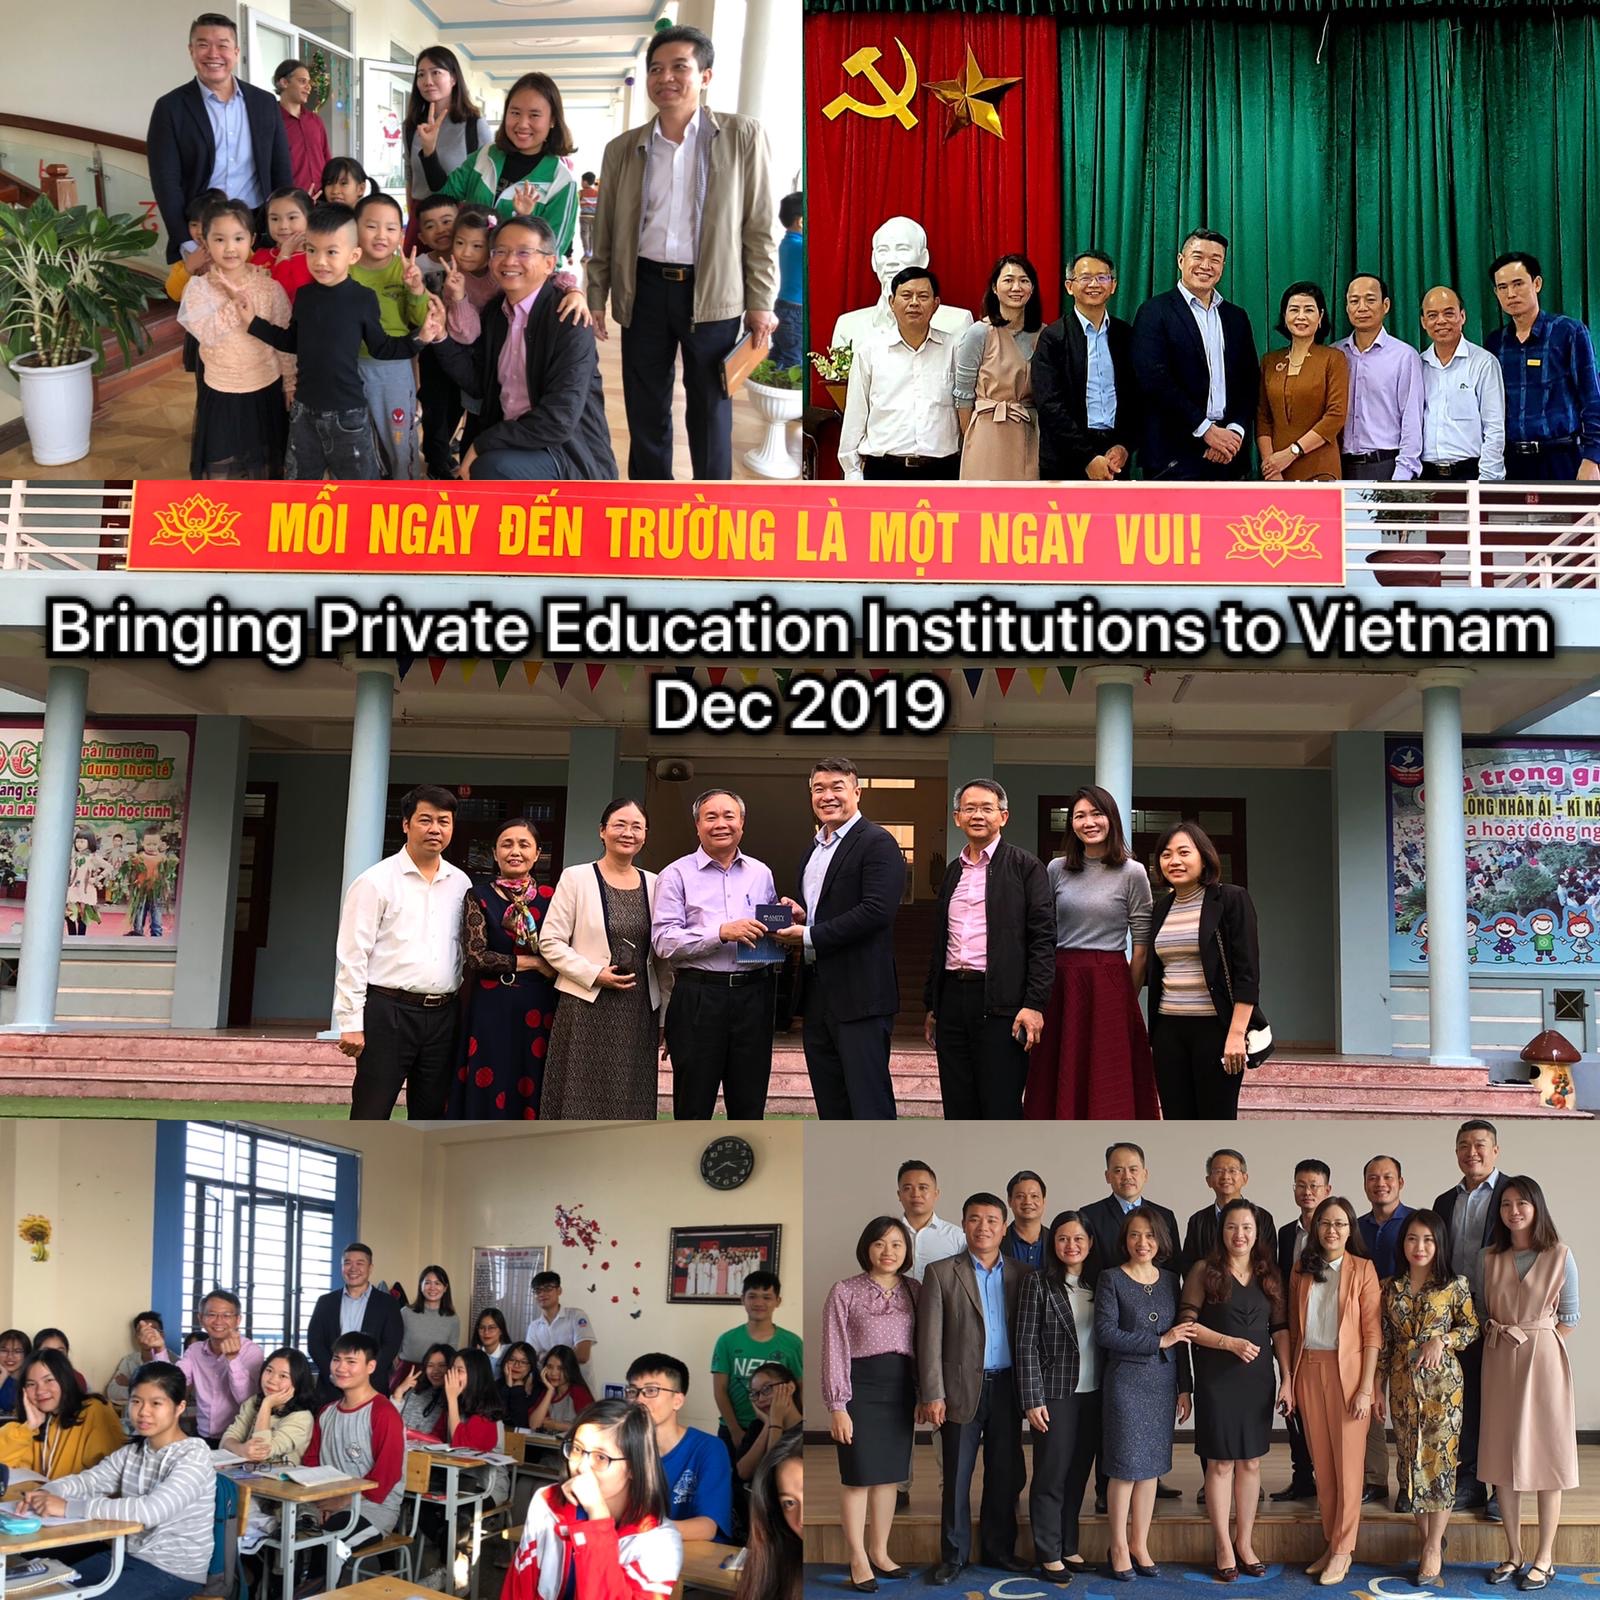 Events in Vietnam Dec 2019